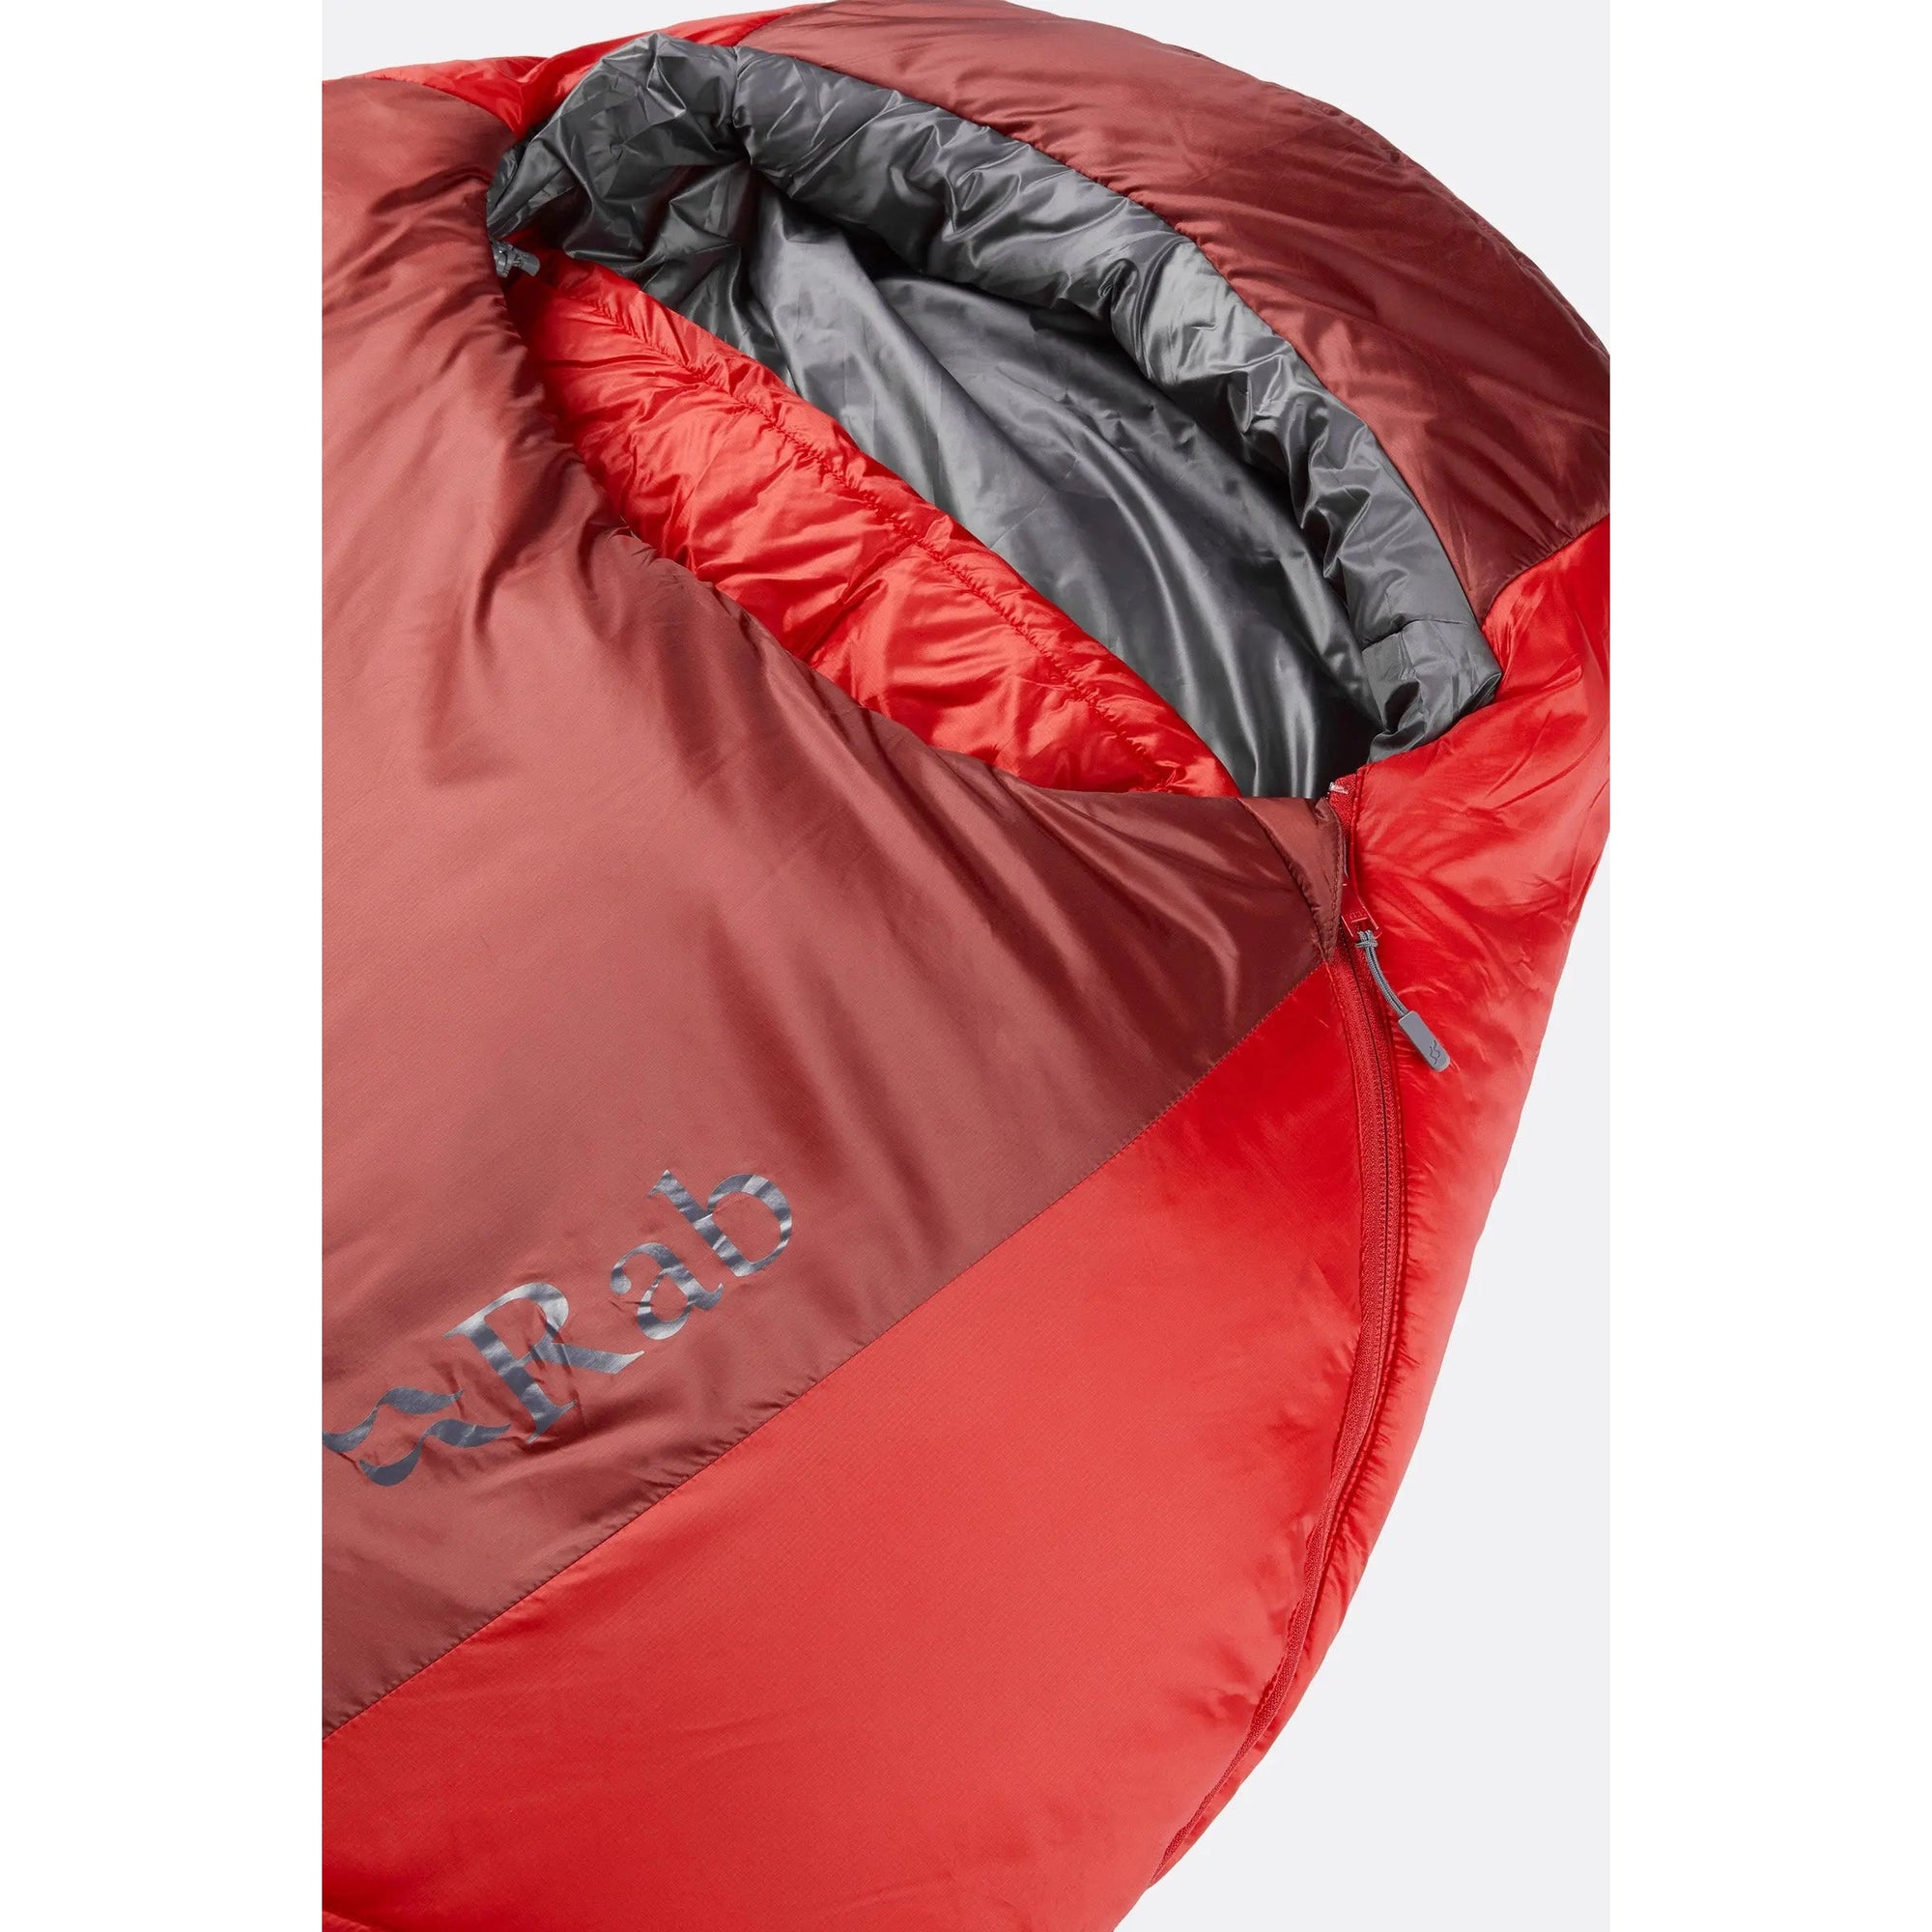 RABRab Solar Eco 3 Sleeping Bag (-8c)Outdoor Action